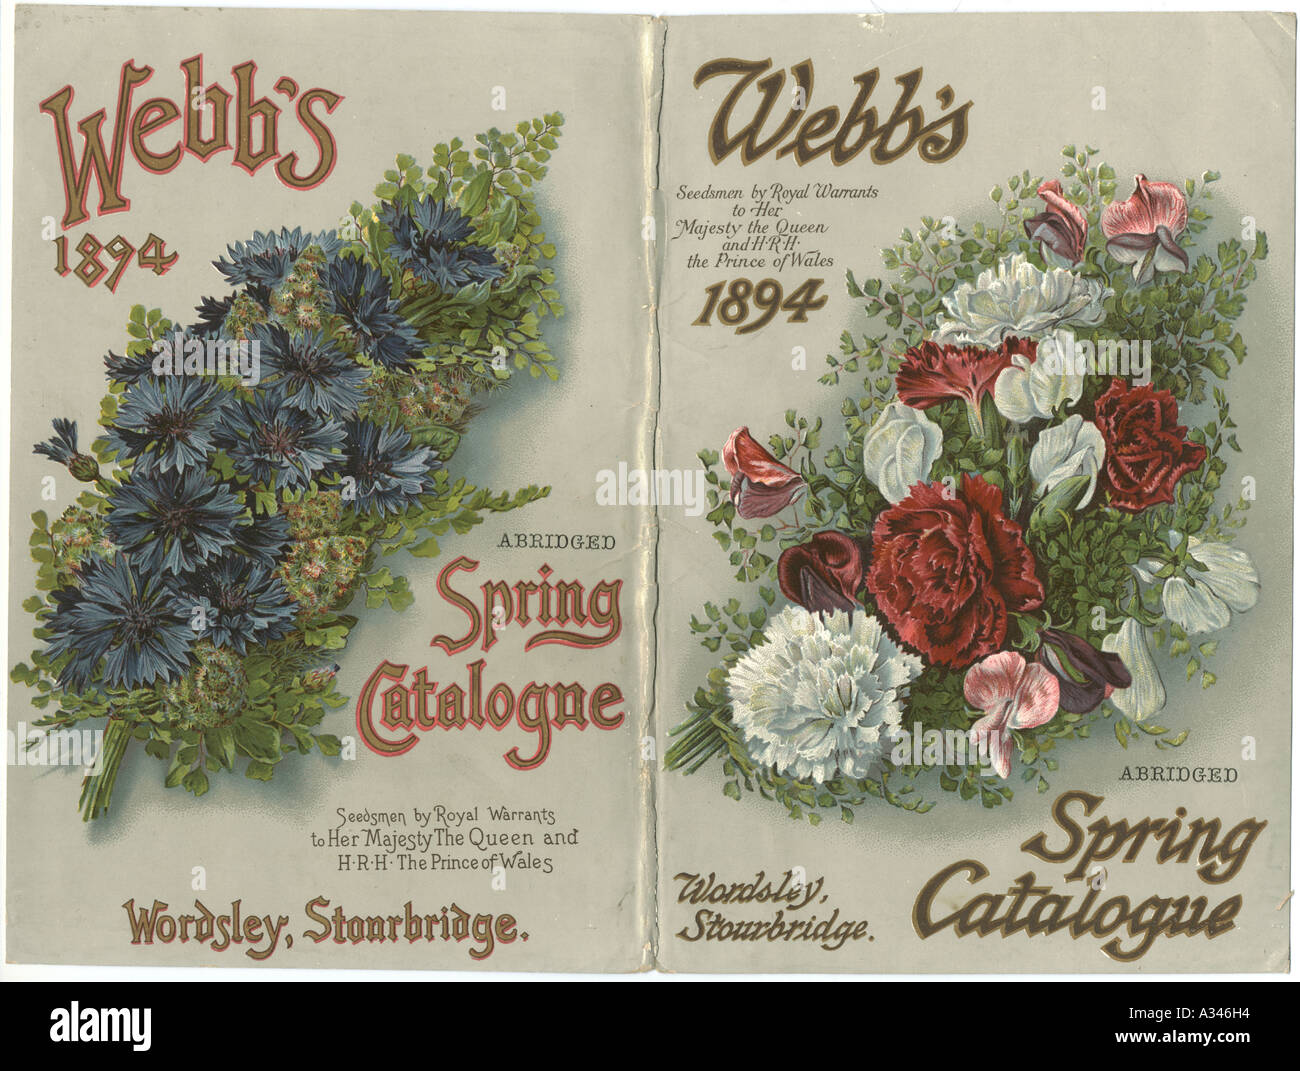 Webb's Spring Catalogue 1894 Stock Photo